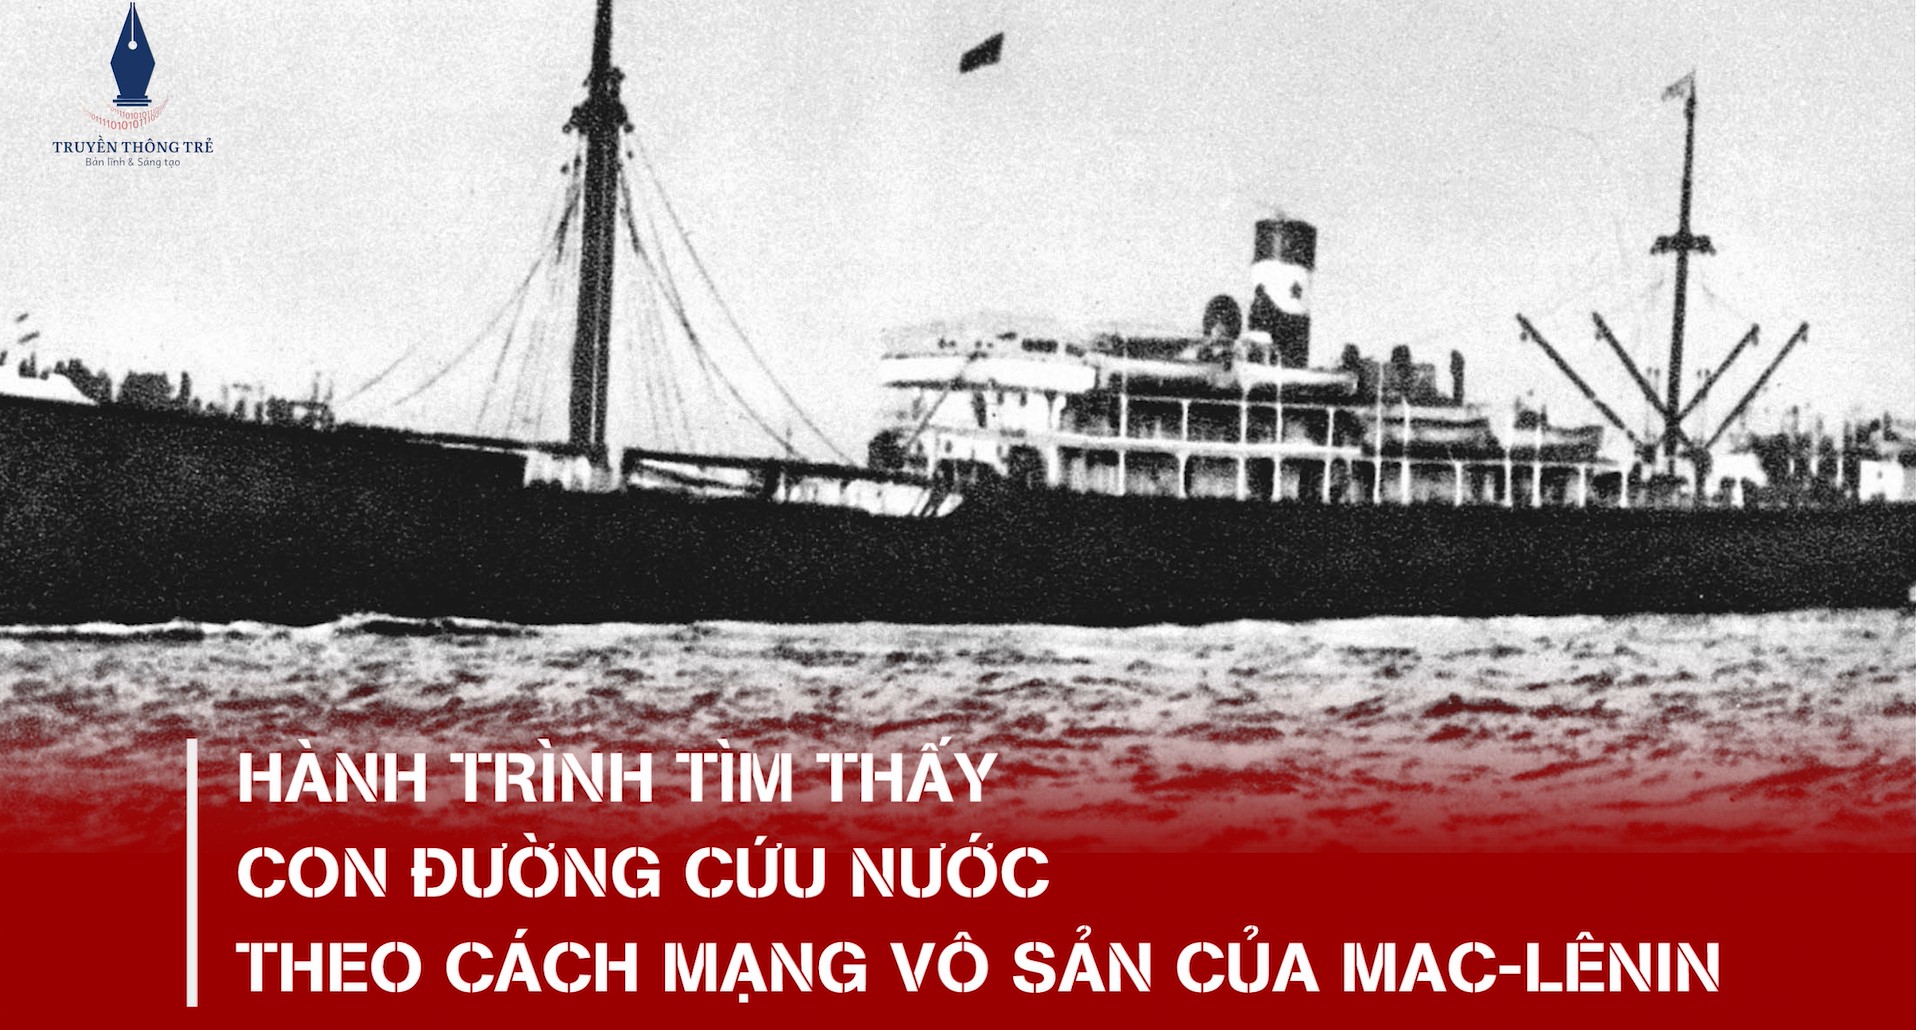 Hành trình tìm đường cứu nước của Nguyễn Ái Quốc - con đường cách mạng vô sản của Mác-Lênin